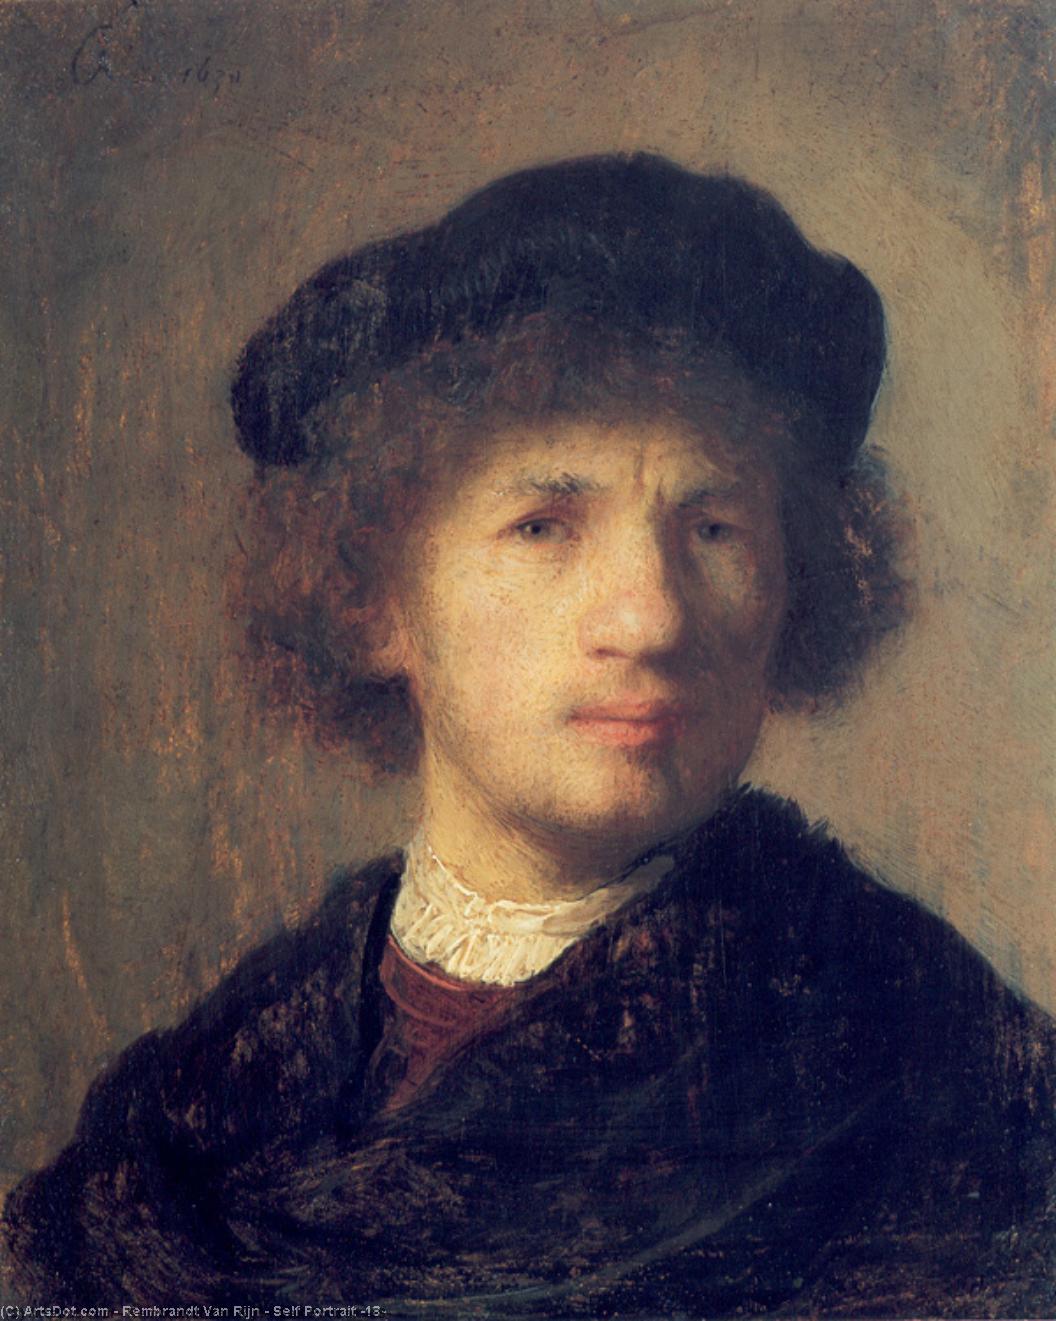 购买 博物馆艺术复制品，艺术复制品，绘画复制品，博物馆质量版画，美术复制品，着名绘画复制品，博物馆品质复制品，帆布艺术版画 自画像( 18), 1630 通过 Rembrandt Van Rijn (1606-1669, Netherlands) | ArtsDot.com